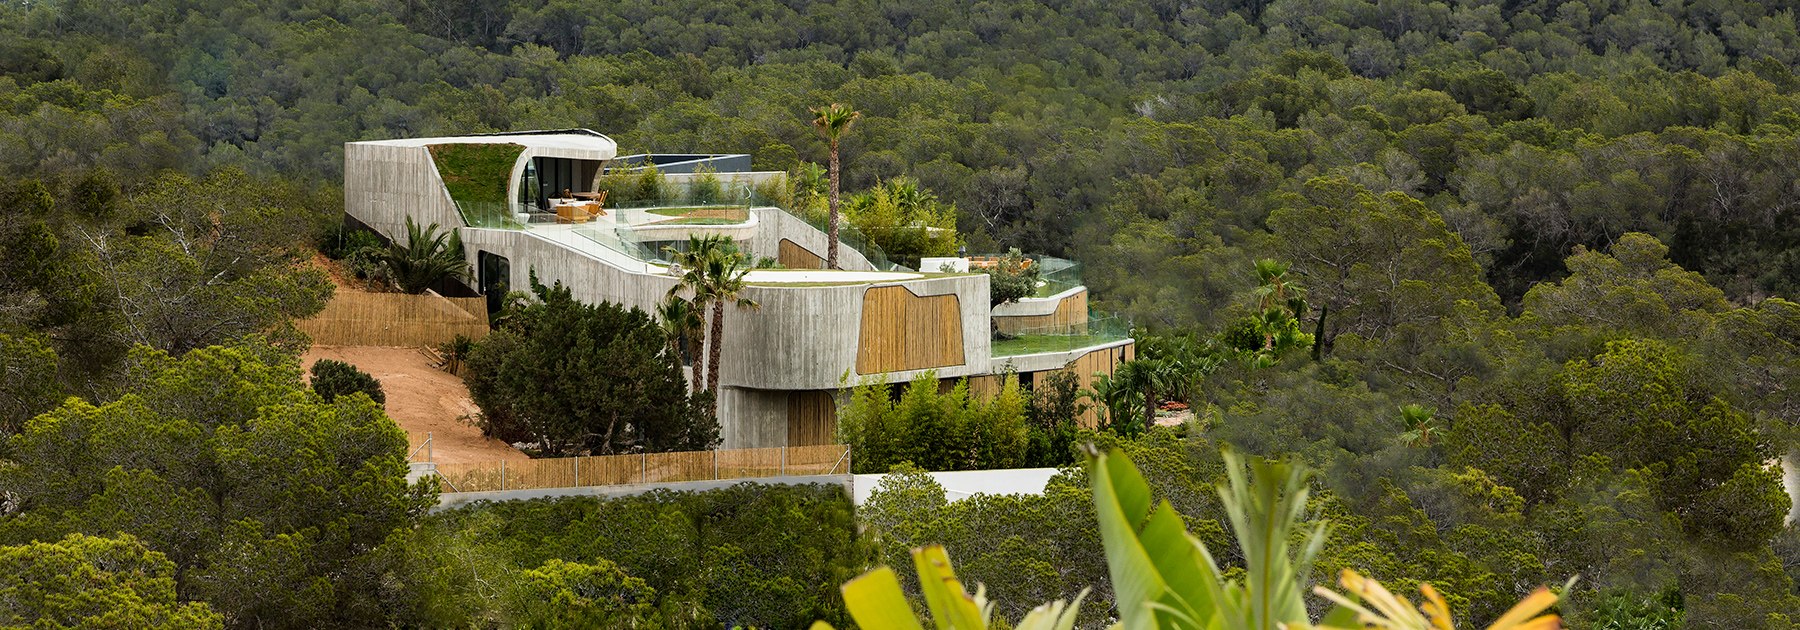 metroarea architetti clads villa in ibiza with board formed concrete and bamboo shutters